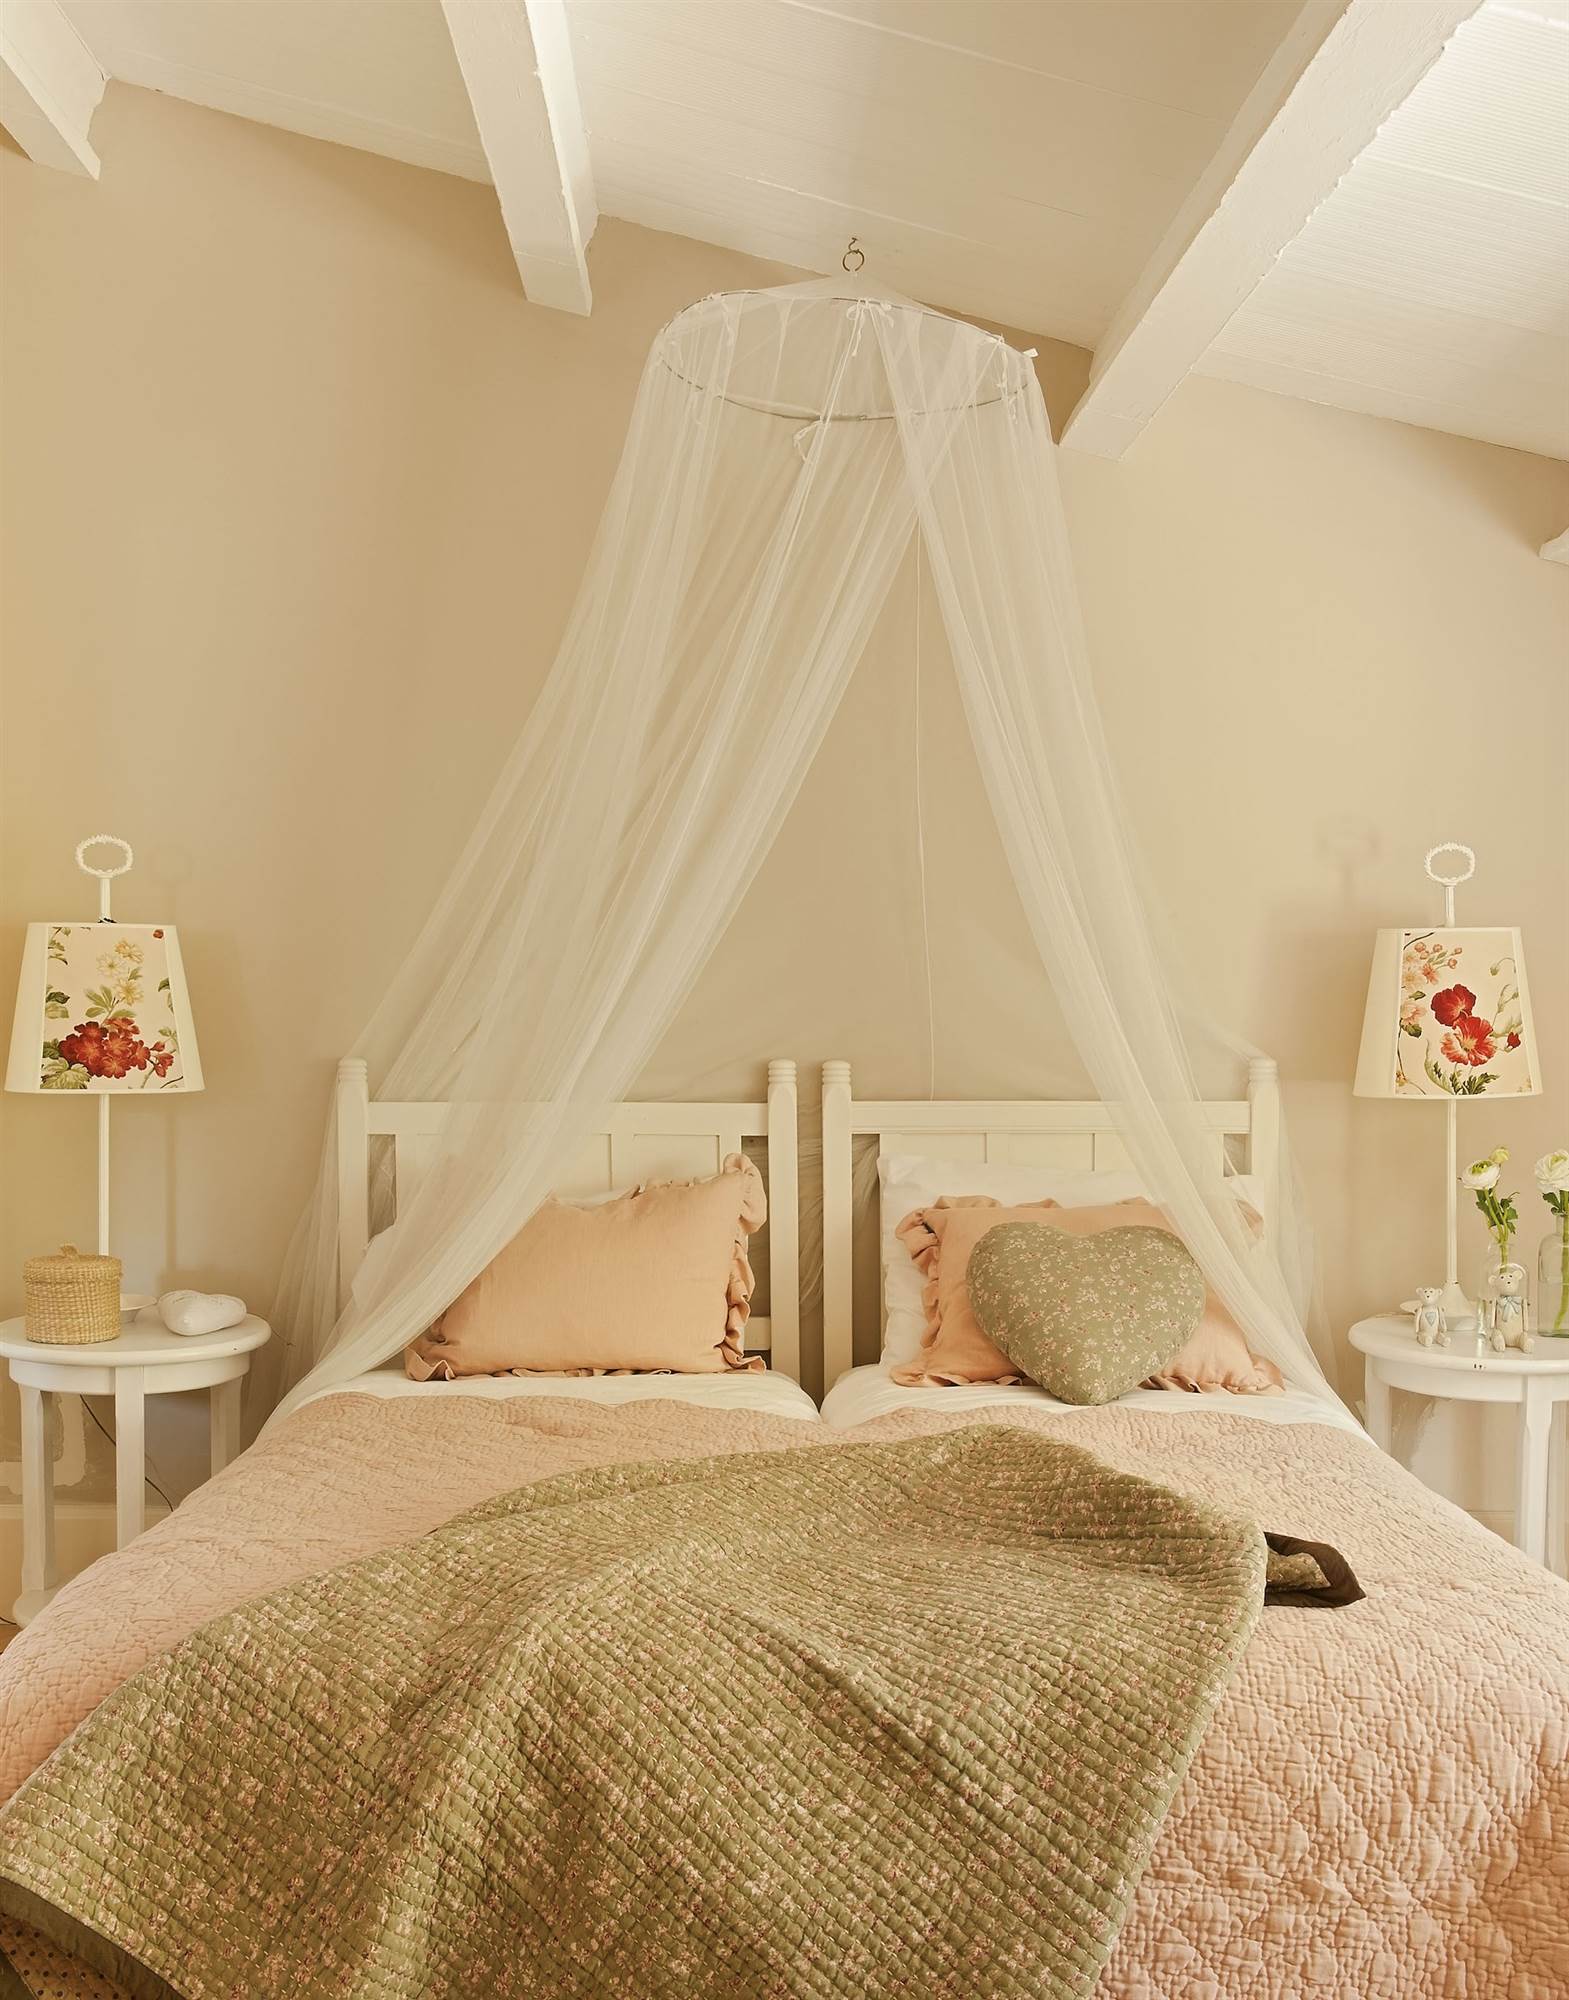 Cabecero de cama de madera pintado de color blanco y con una mosquitera.